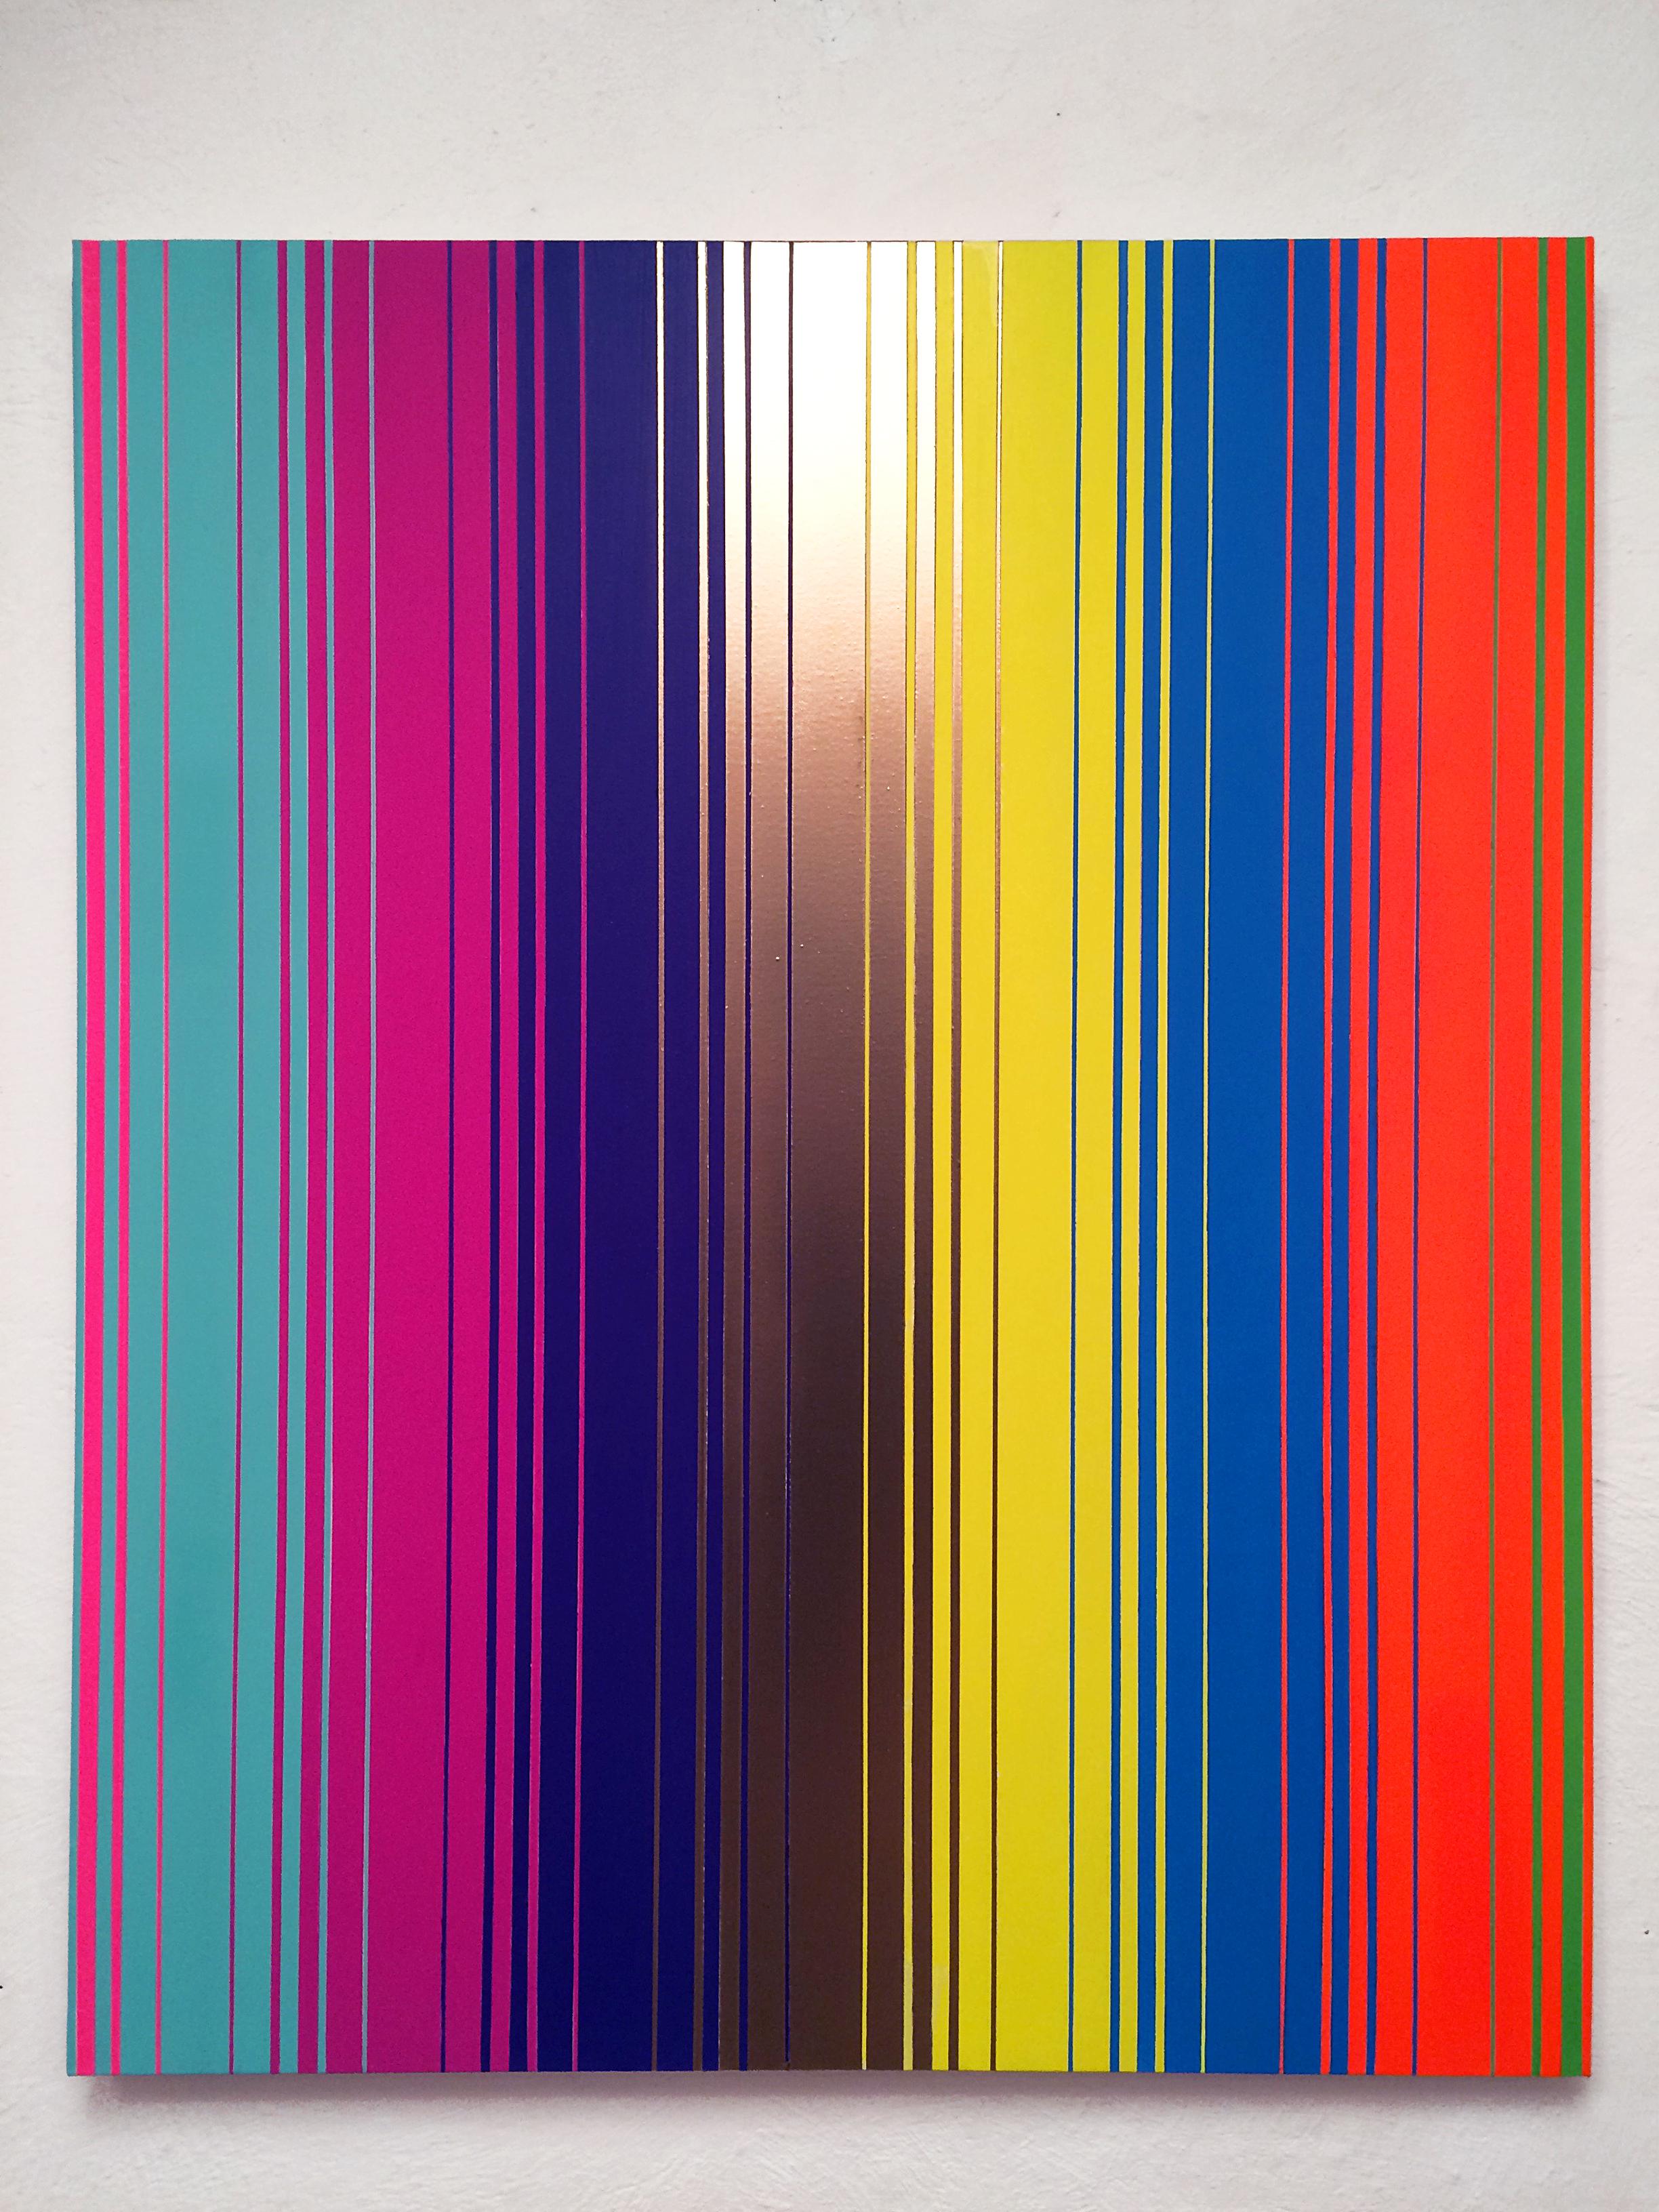 "Secuencia No. 15", 2015, acrílico y esmalte sobre tela, 120 x 100 cm.